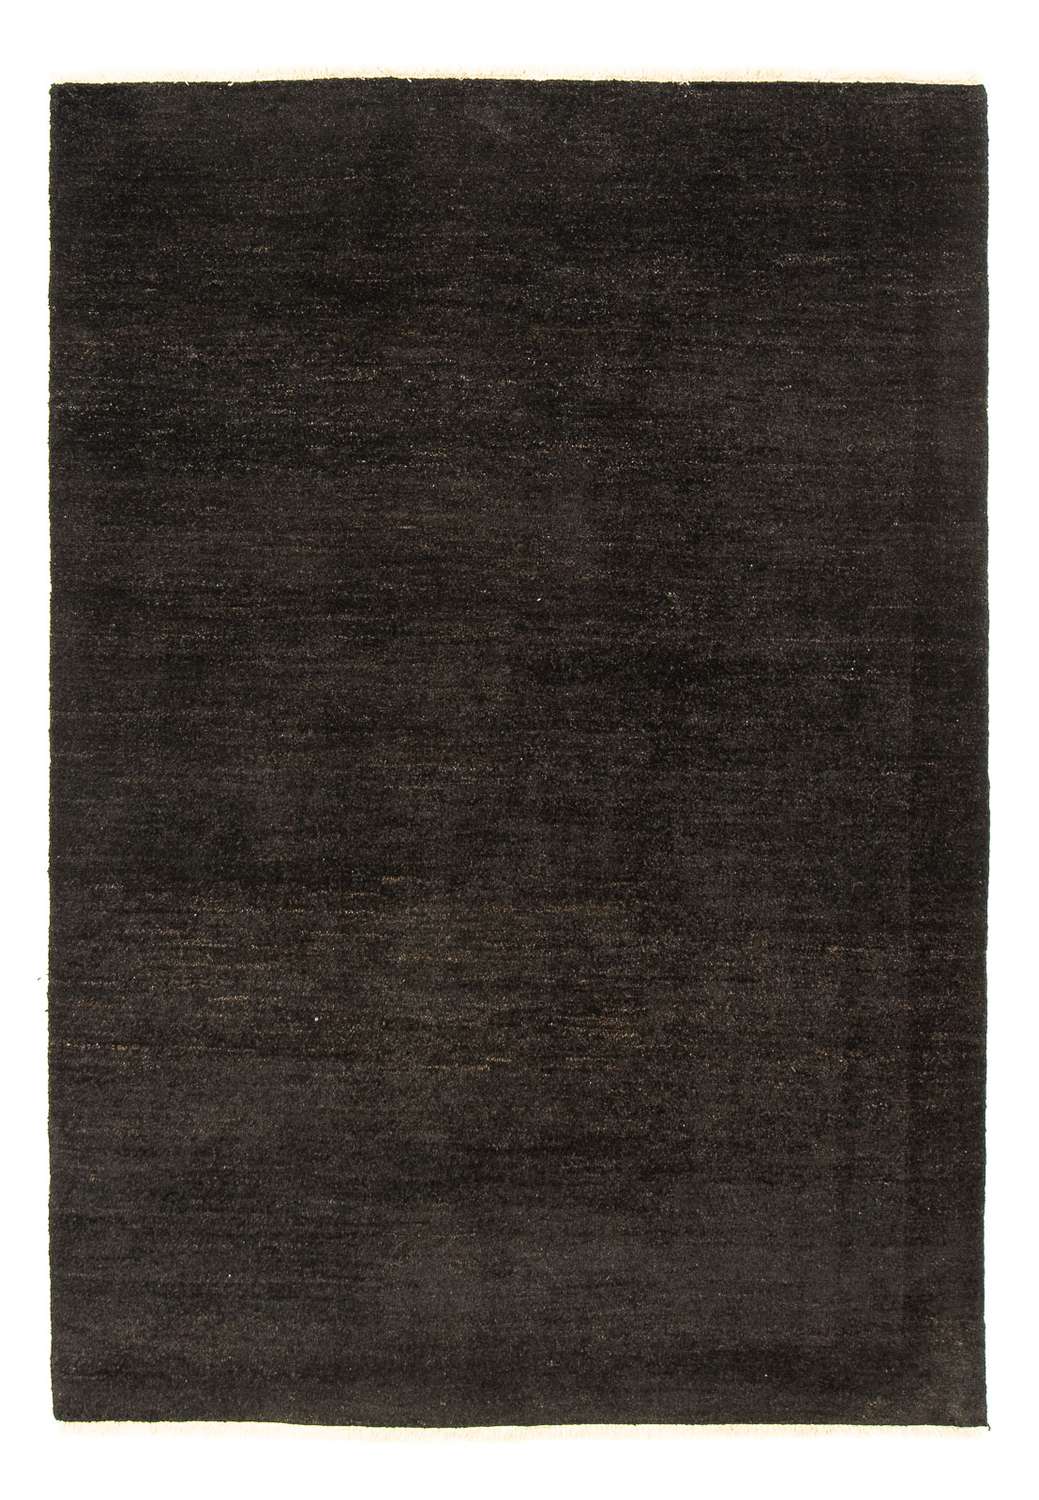 Gabbeh Rug - Indus - 205 x 150 cm - dark brown